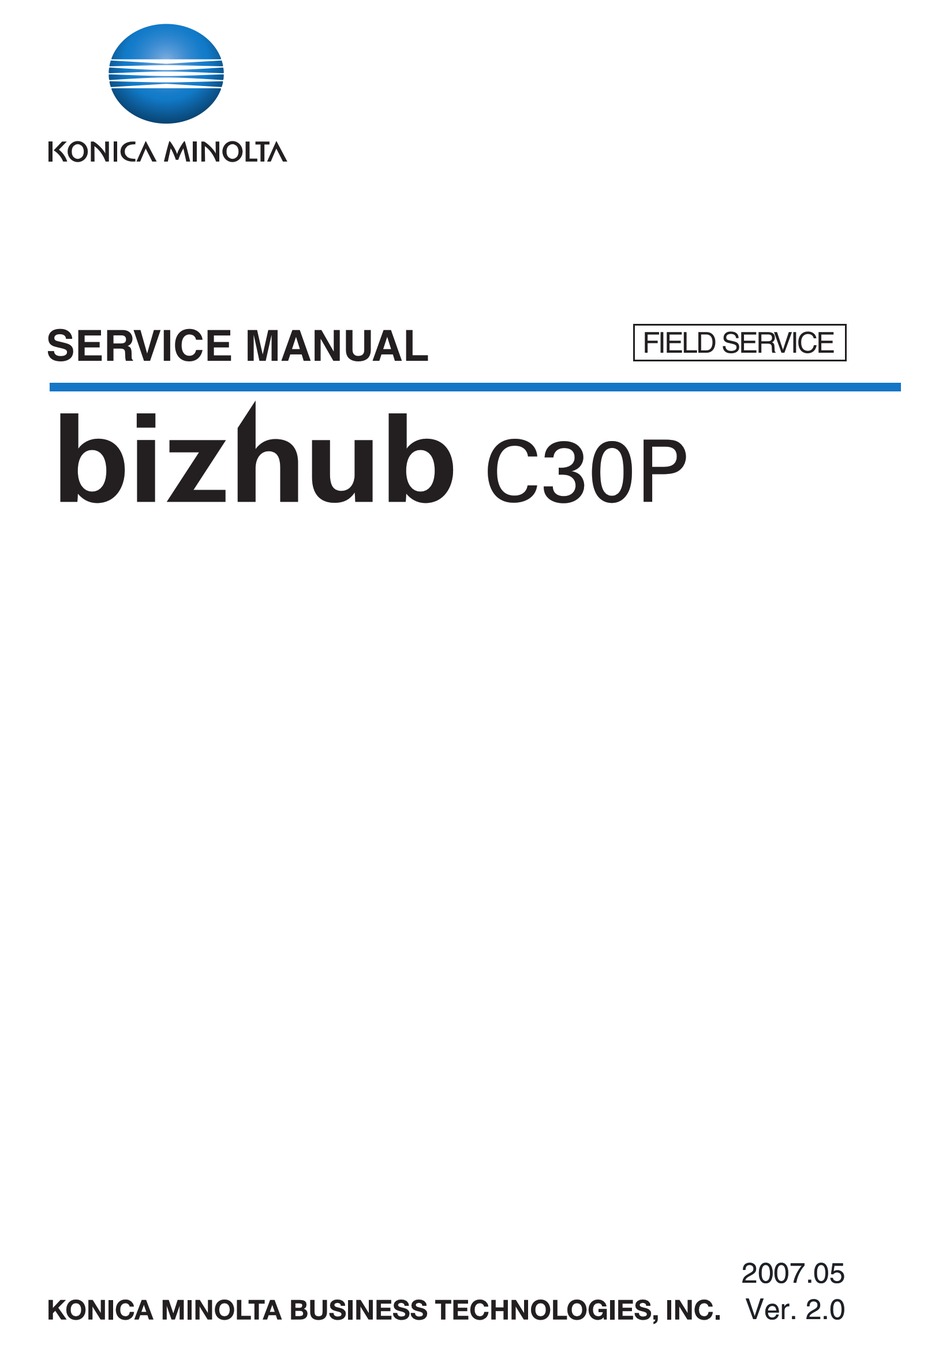 Konica Minolta Bizhub C30p Service Manual Pdf Download Manualslib